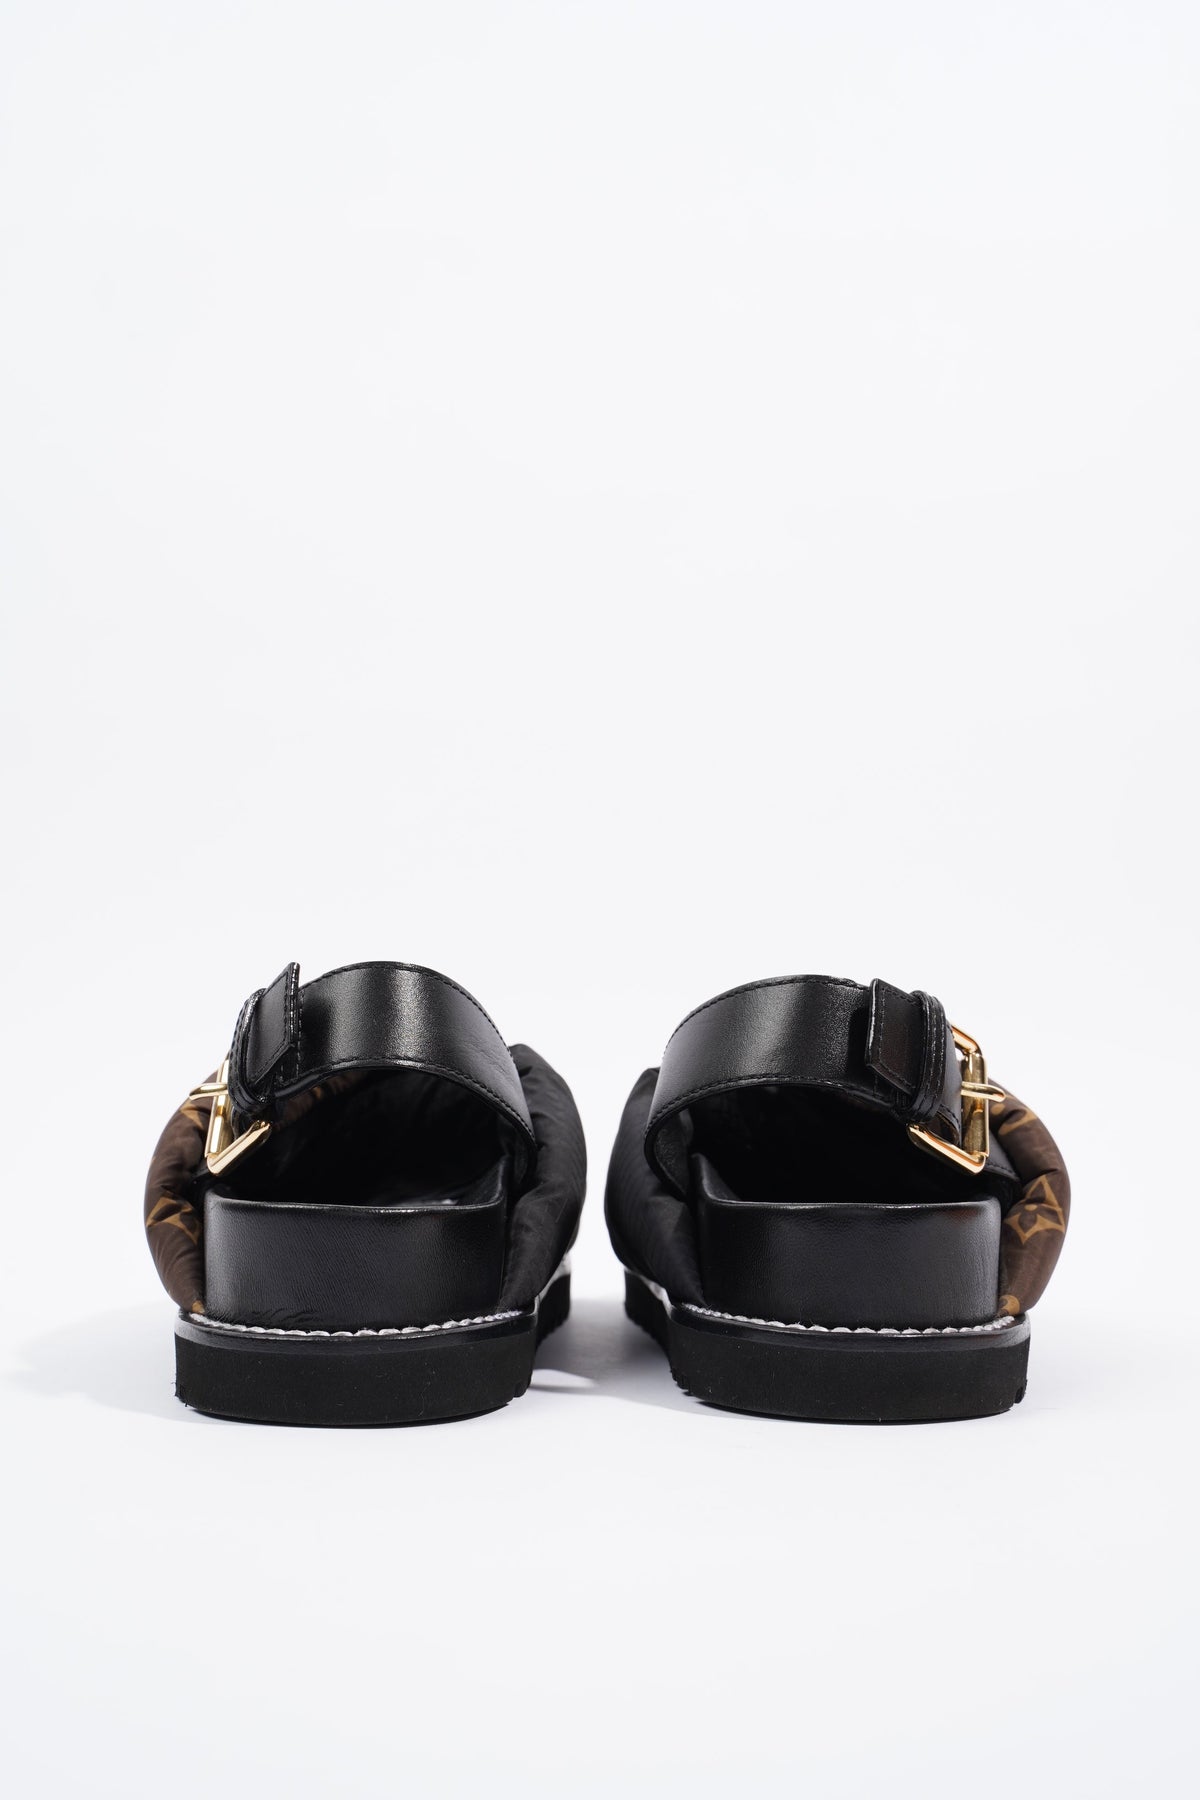 Louis Vuitton Paseo Flat Sandal S 38